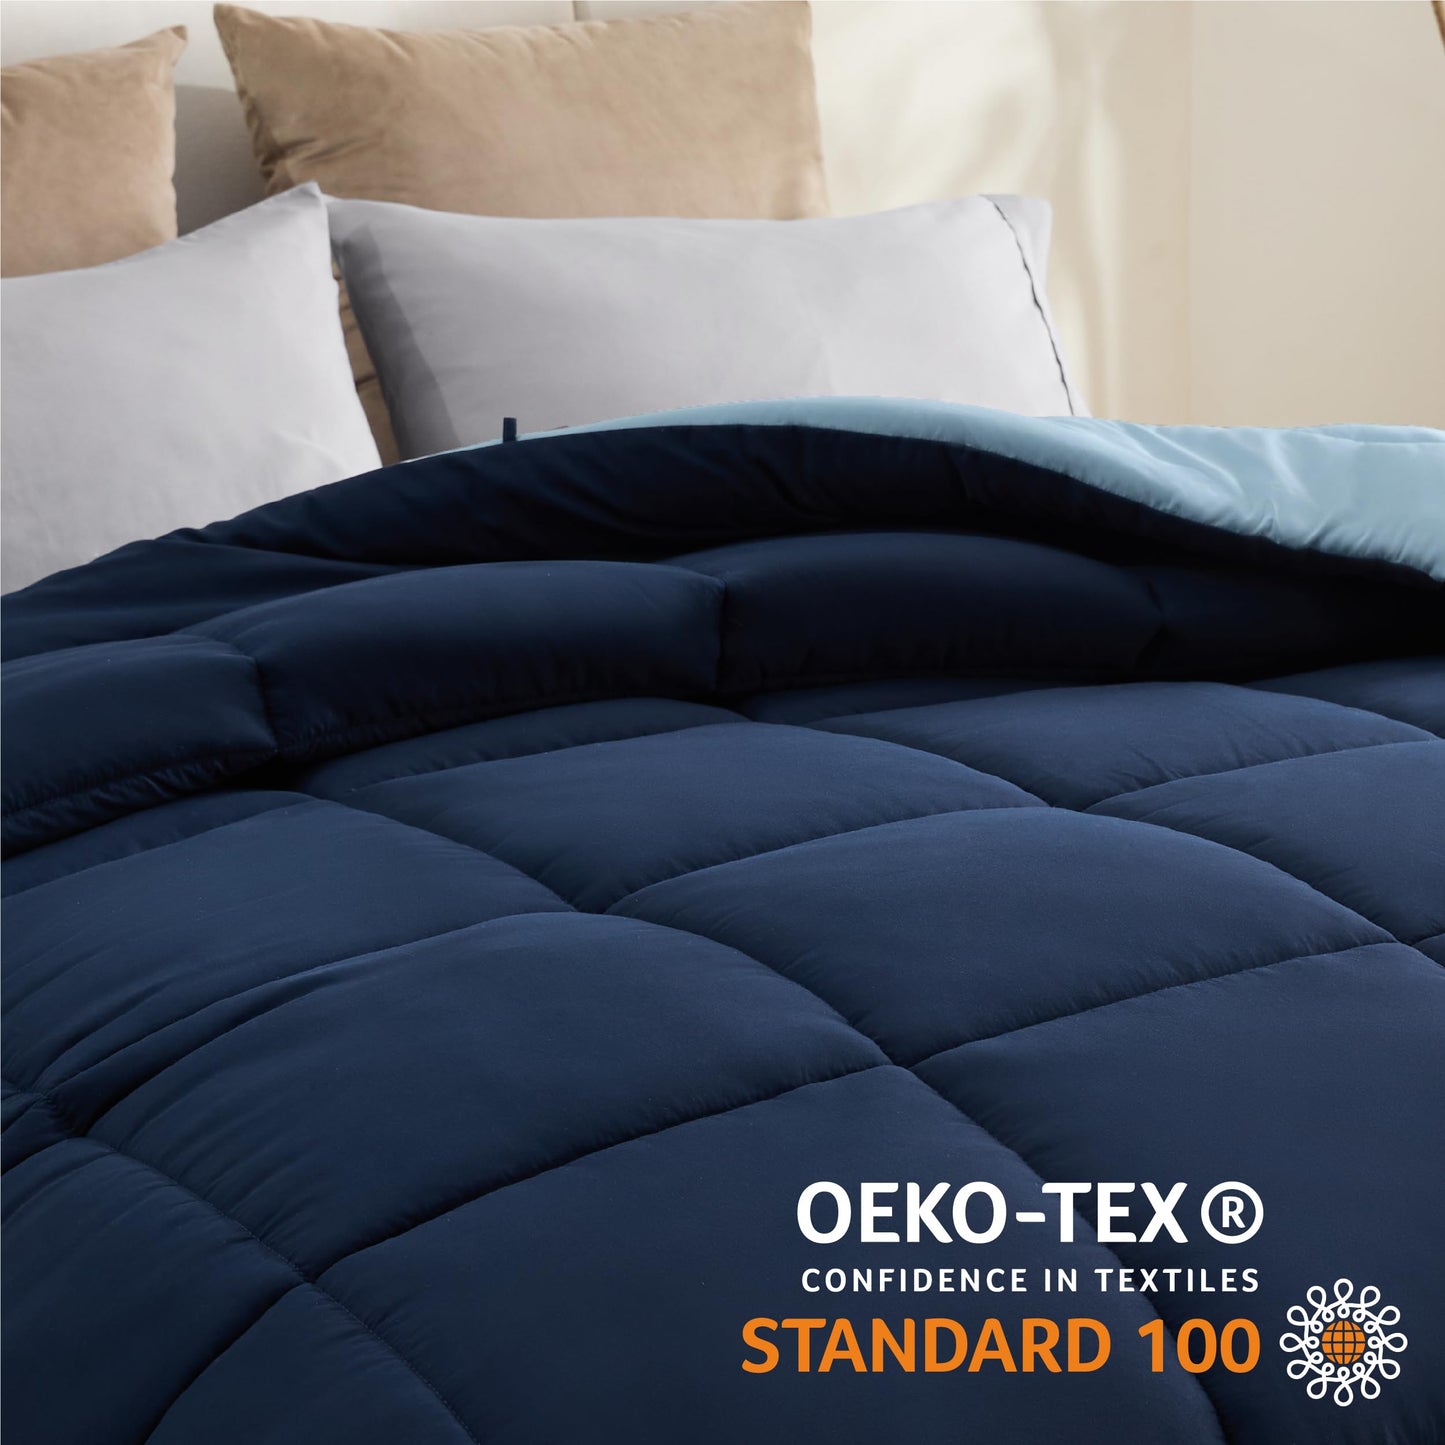 Bedsure Full Reversible Comforter Duvet Insert - All Season Quilted Comforters Full Size, Down Alternative Full Size Bedding Comforter with Corner Tabs - Blue/Light Blue